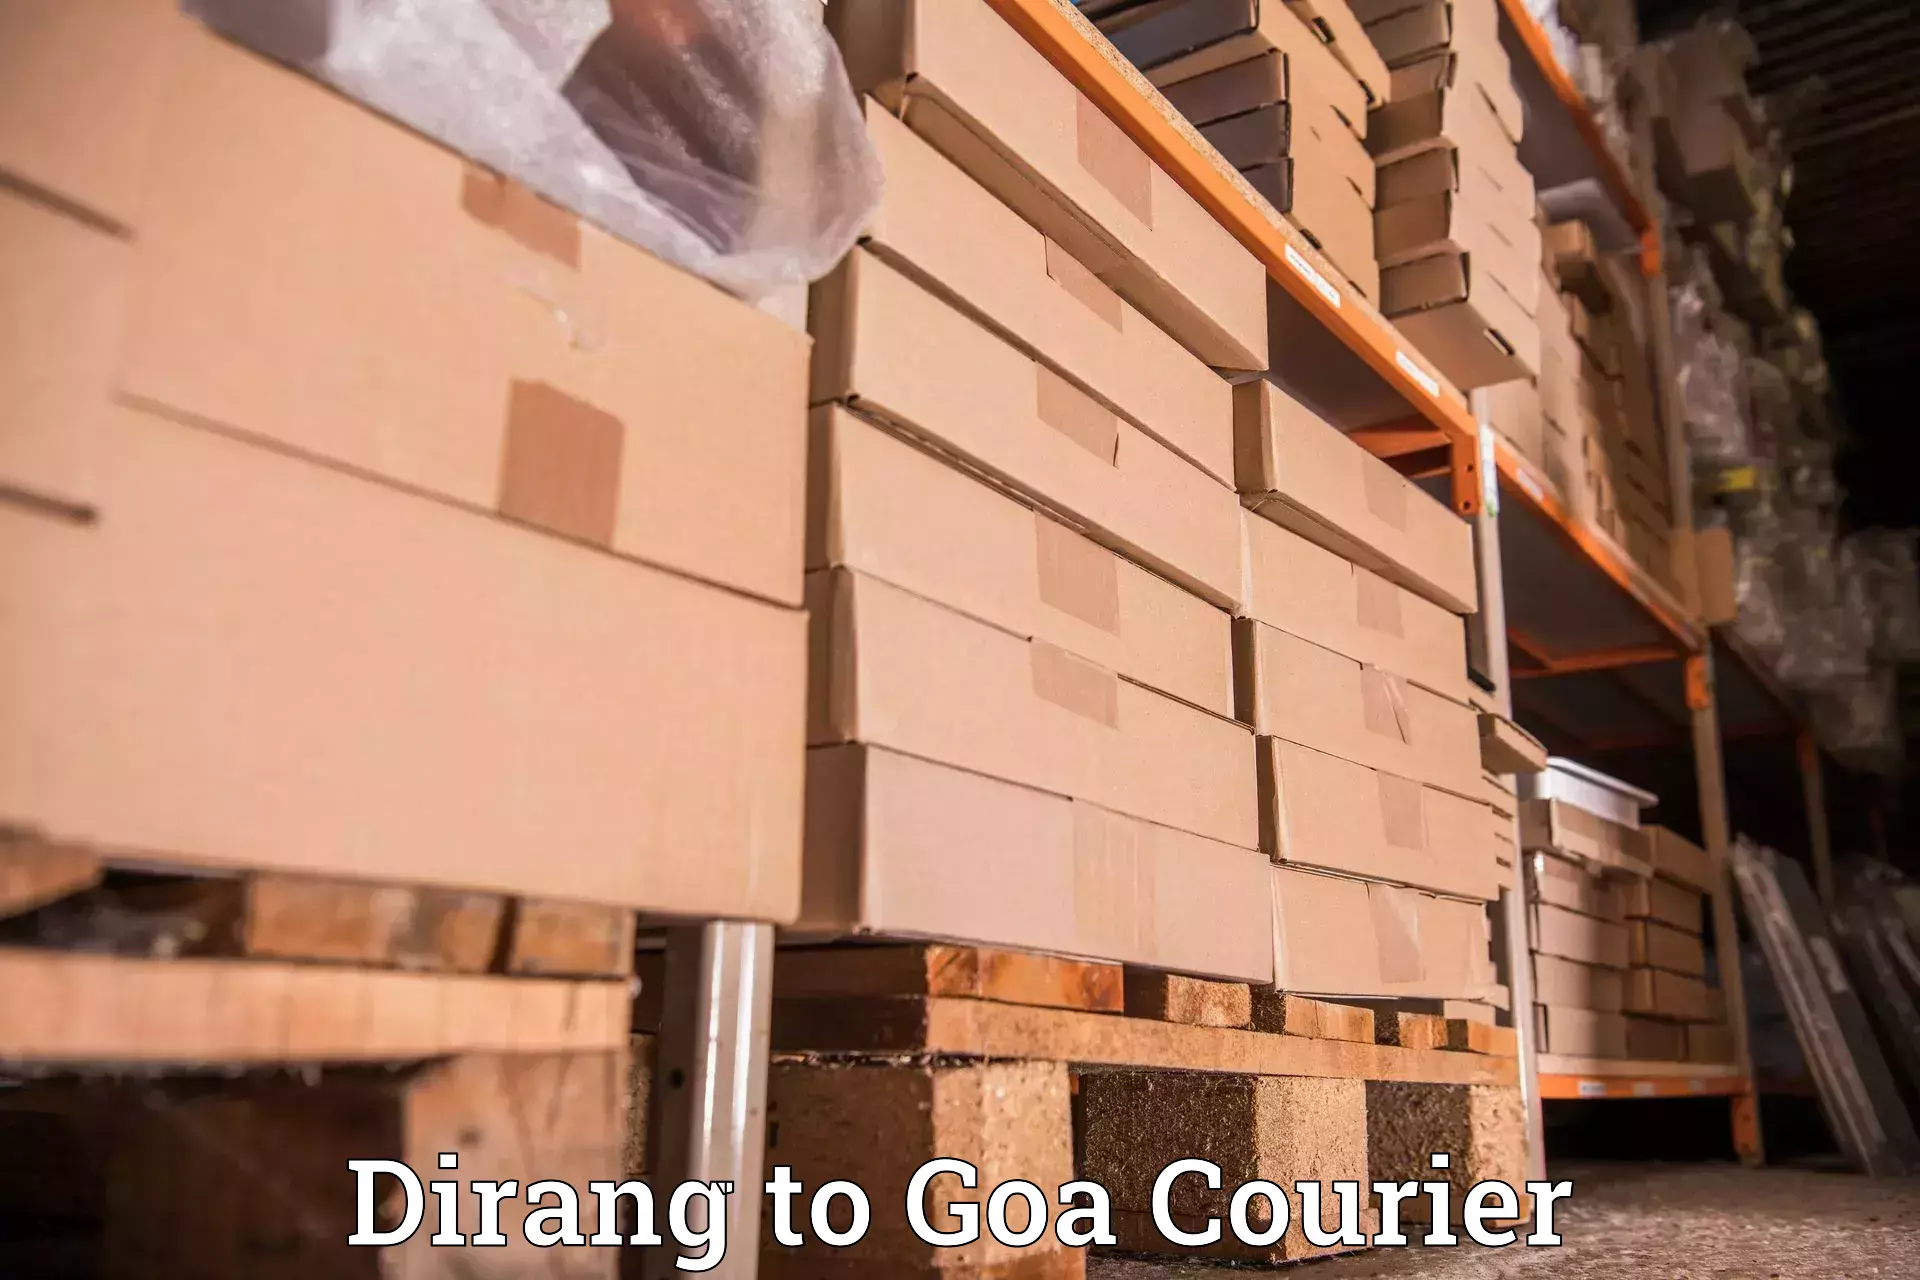 Efficient order fulfillment Dirang to Goa